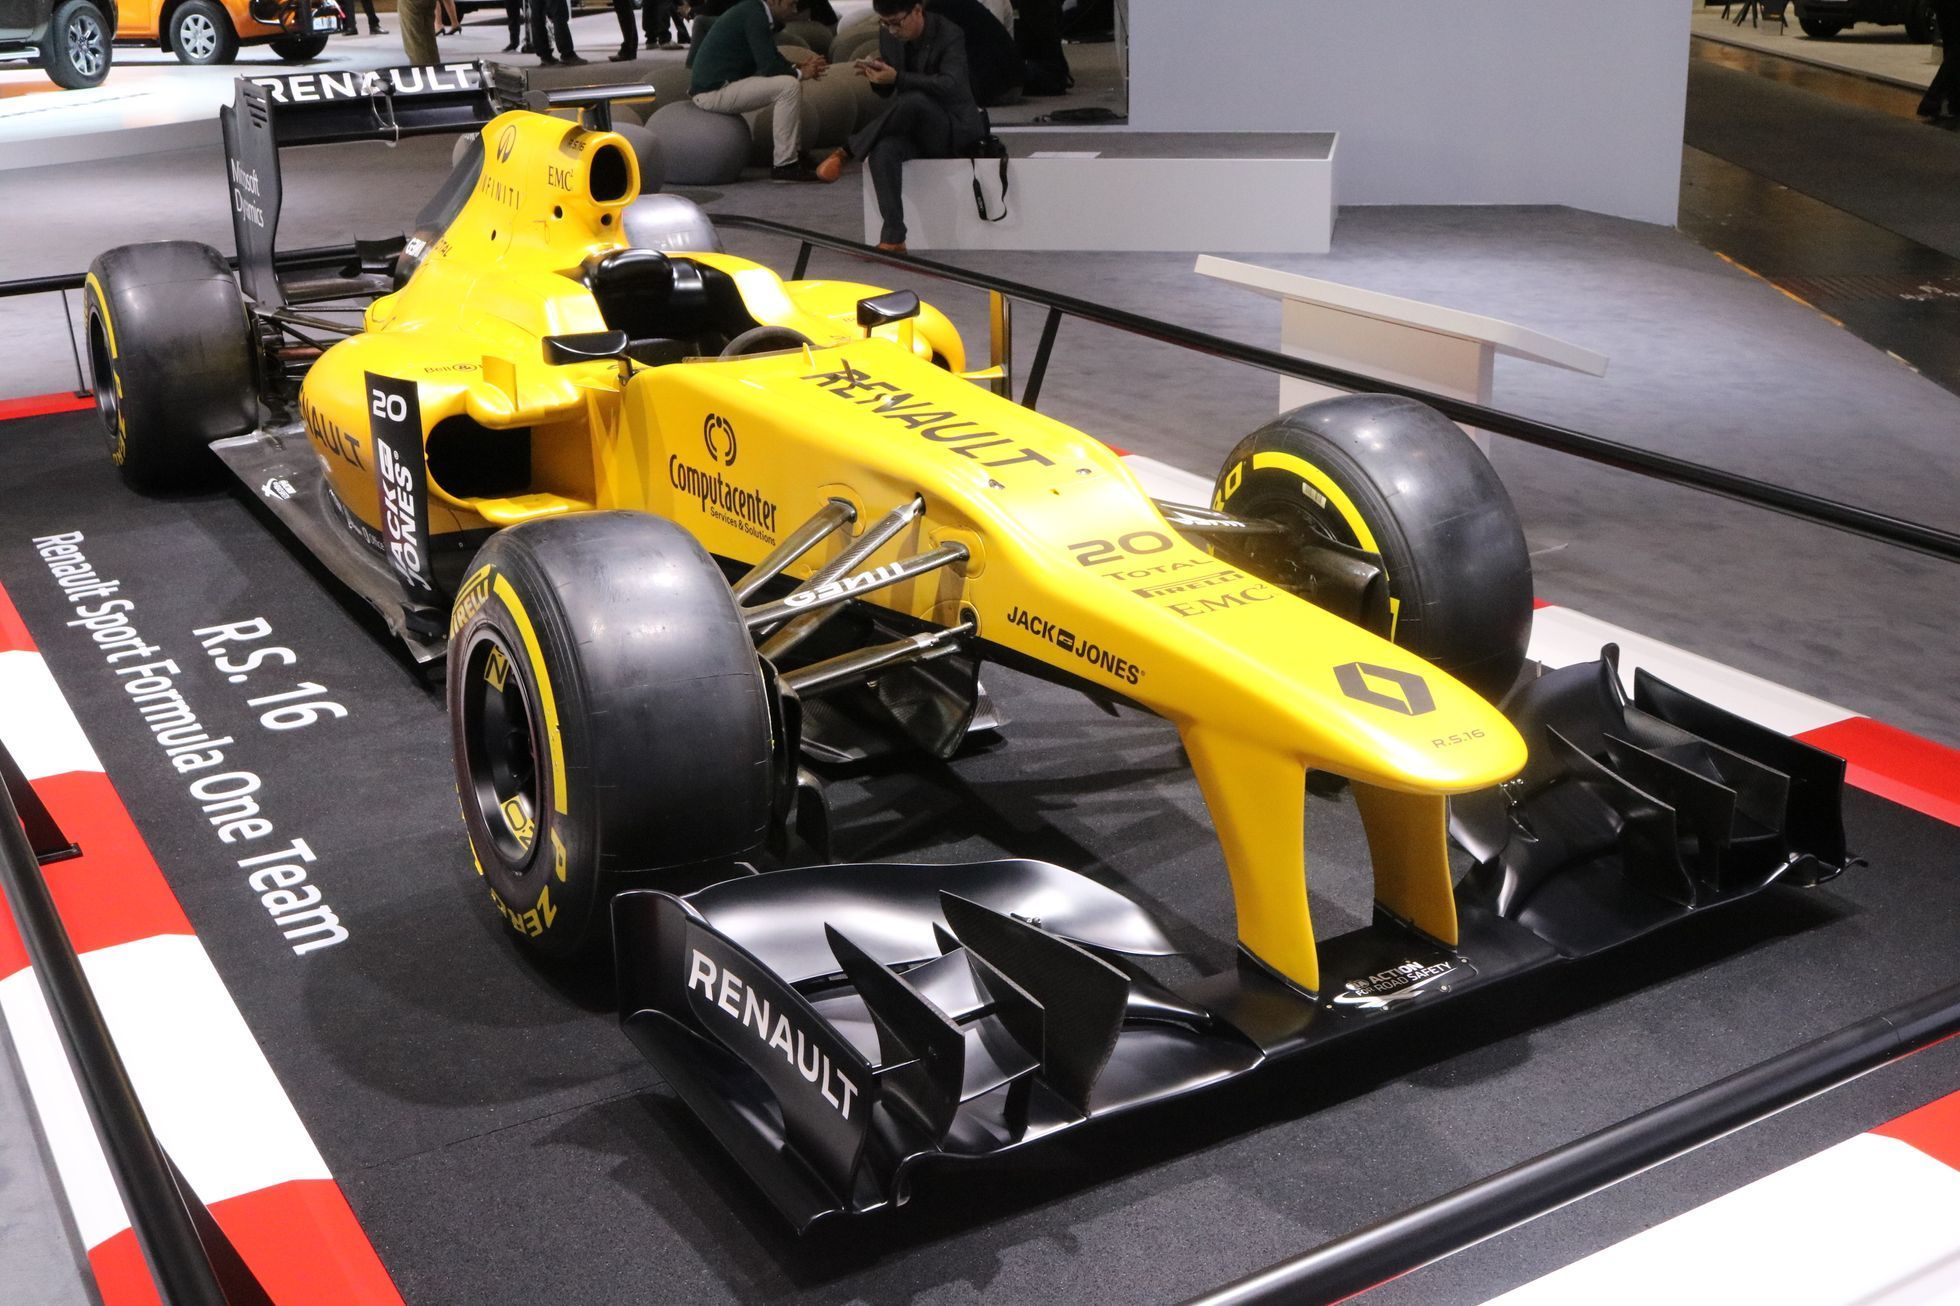 IAA Hannover - Renault F1